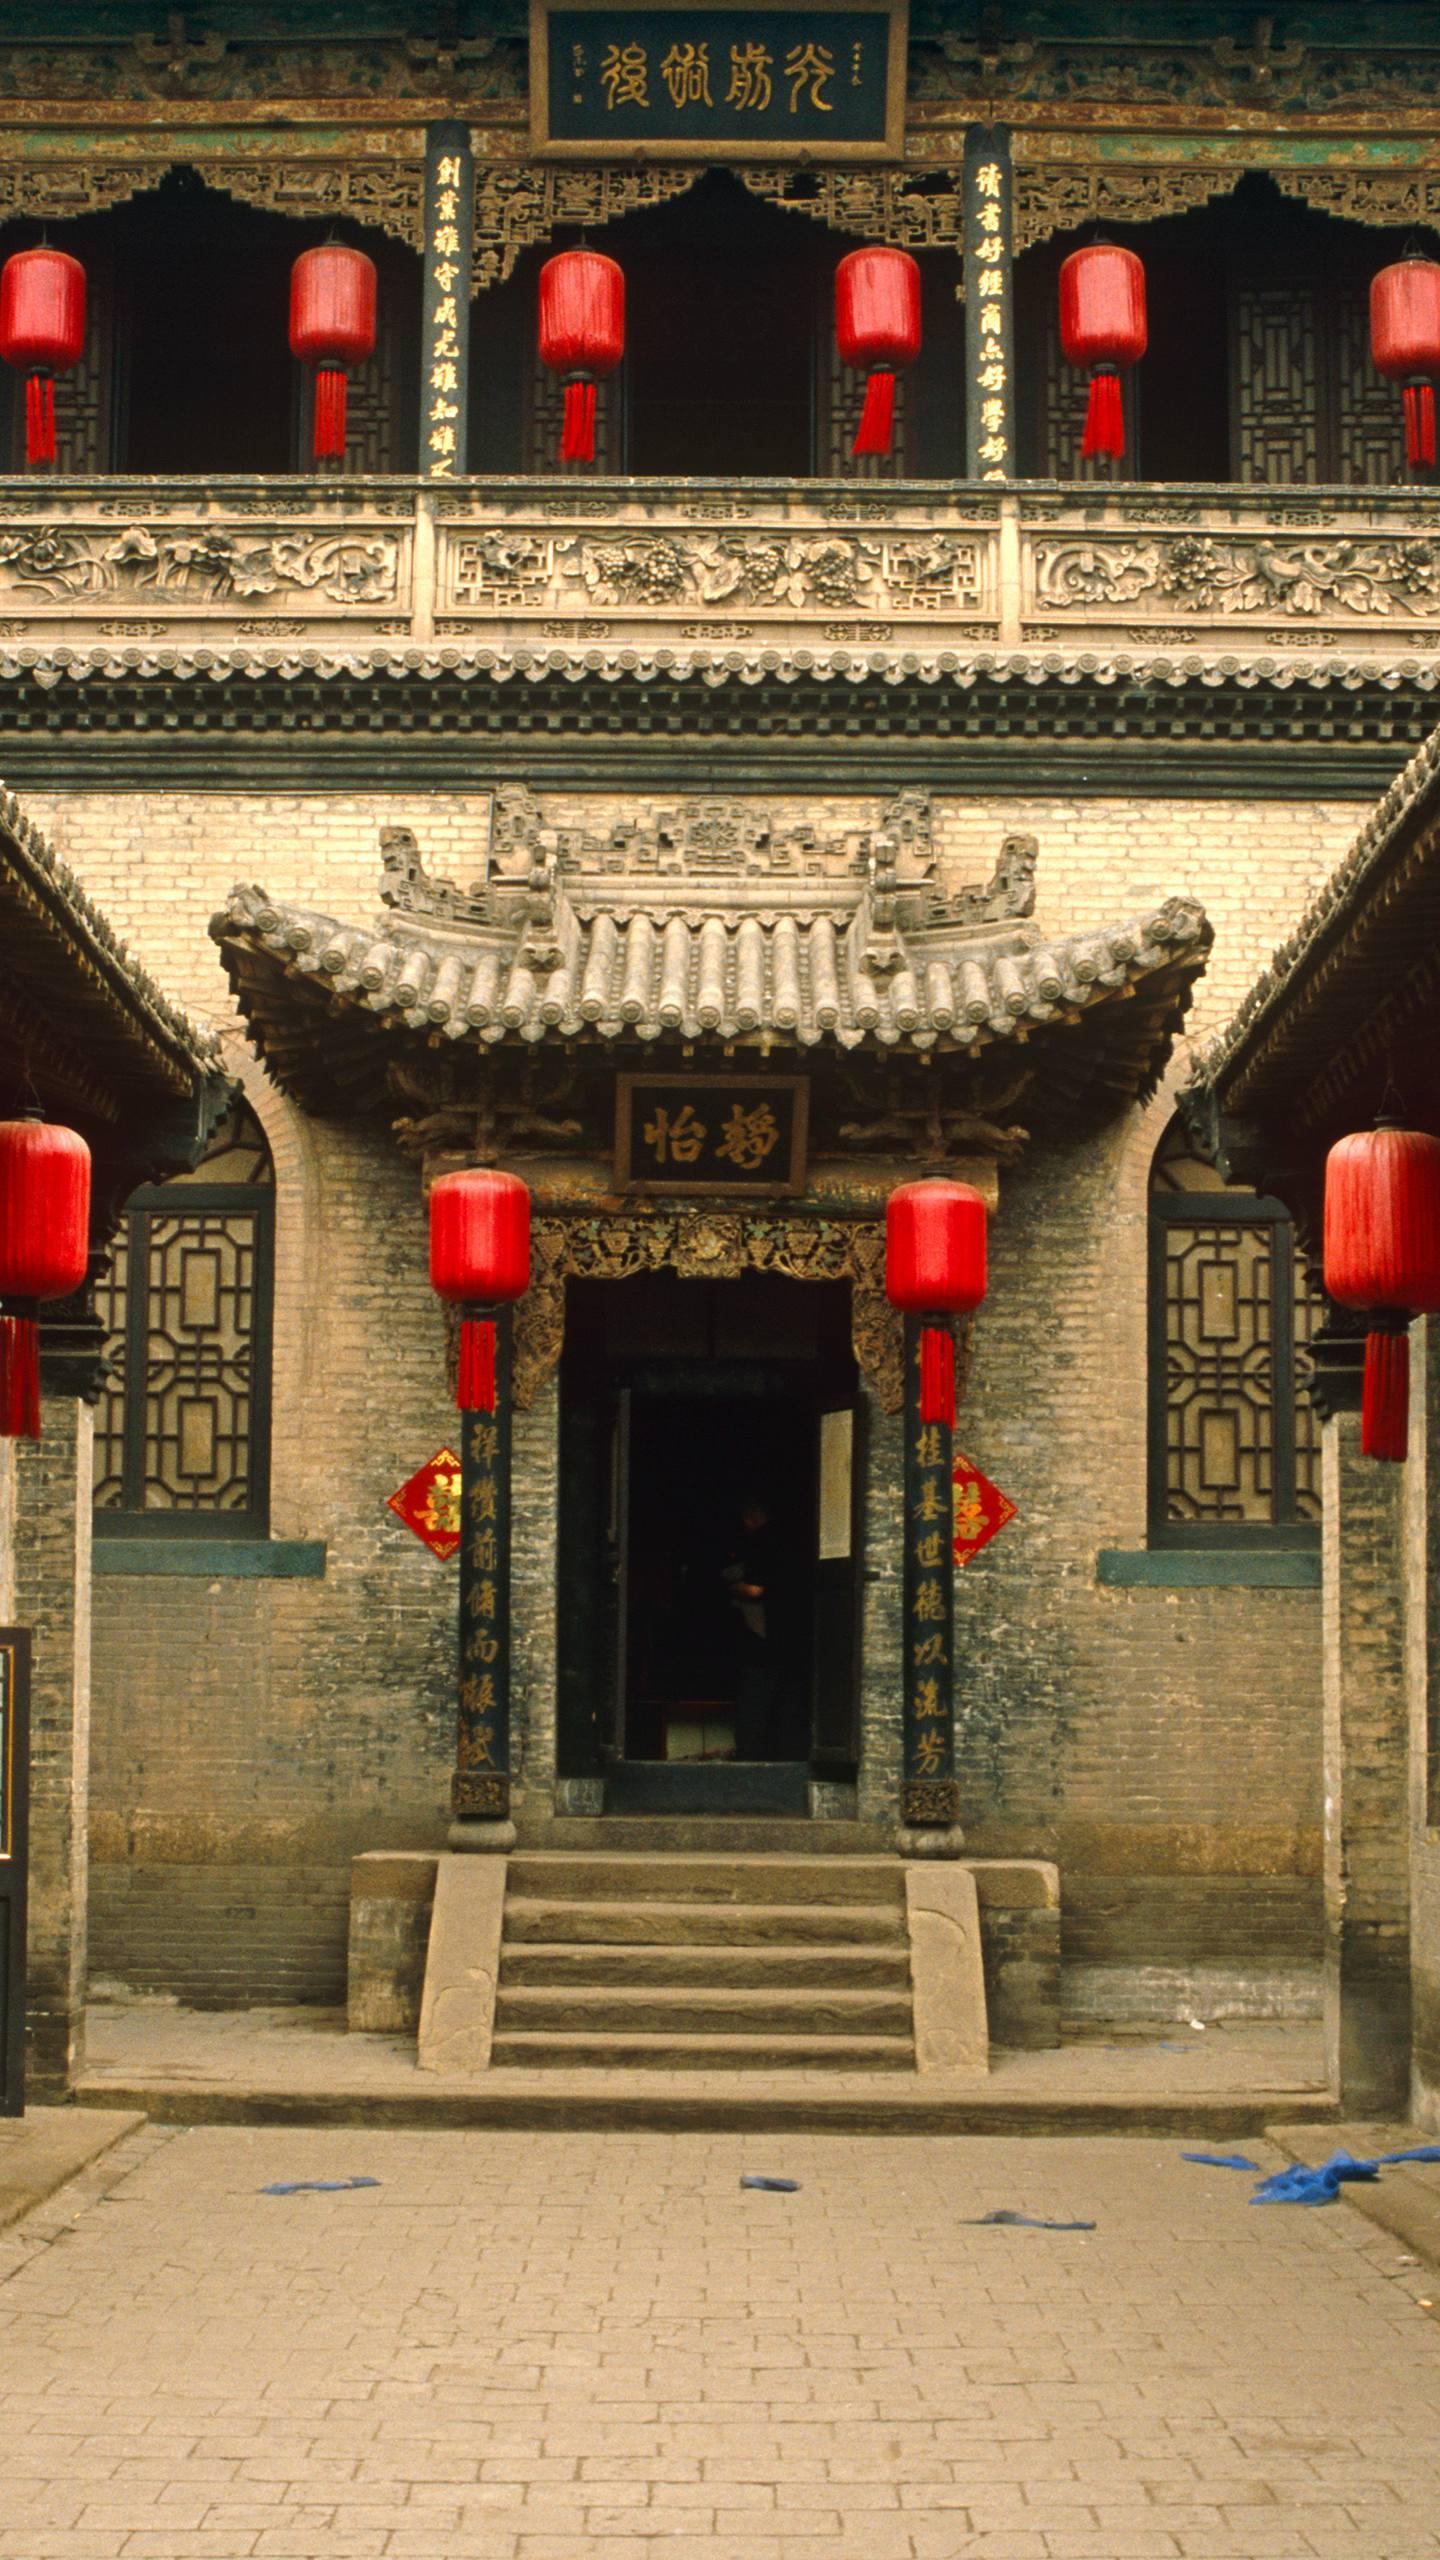 乔家大院—华为杂志锁屏位于山西省祁县乔家堡村,始建于1756年,是一座